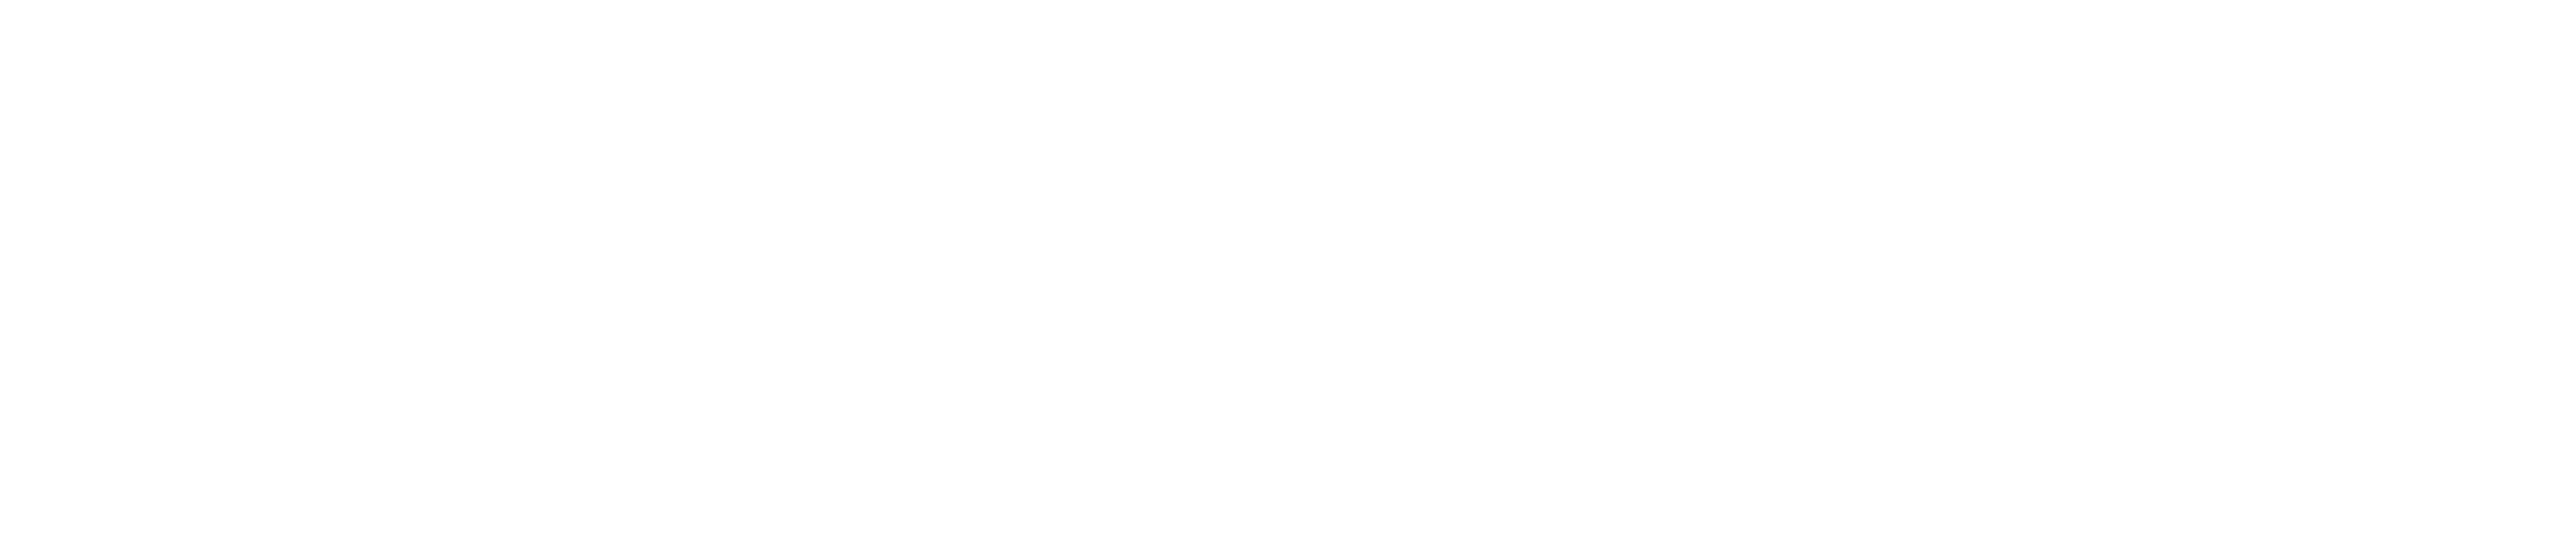 Wayward Pines logo